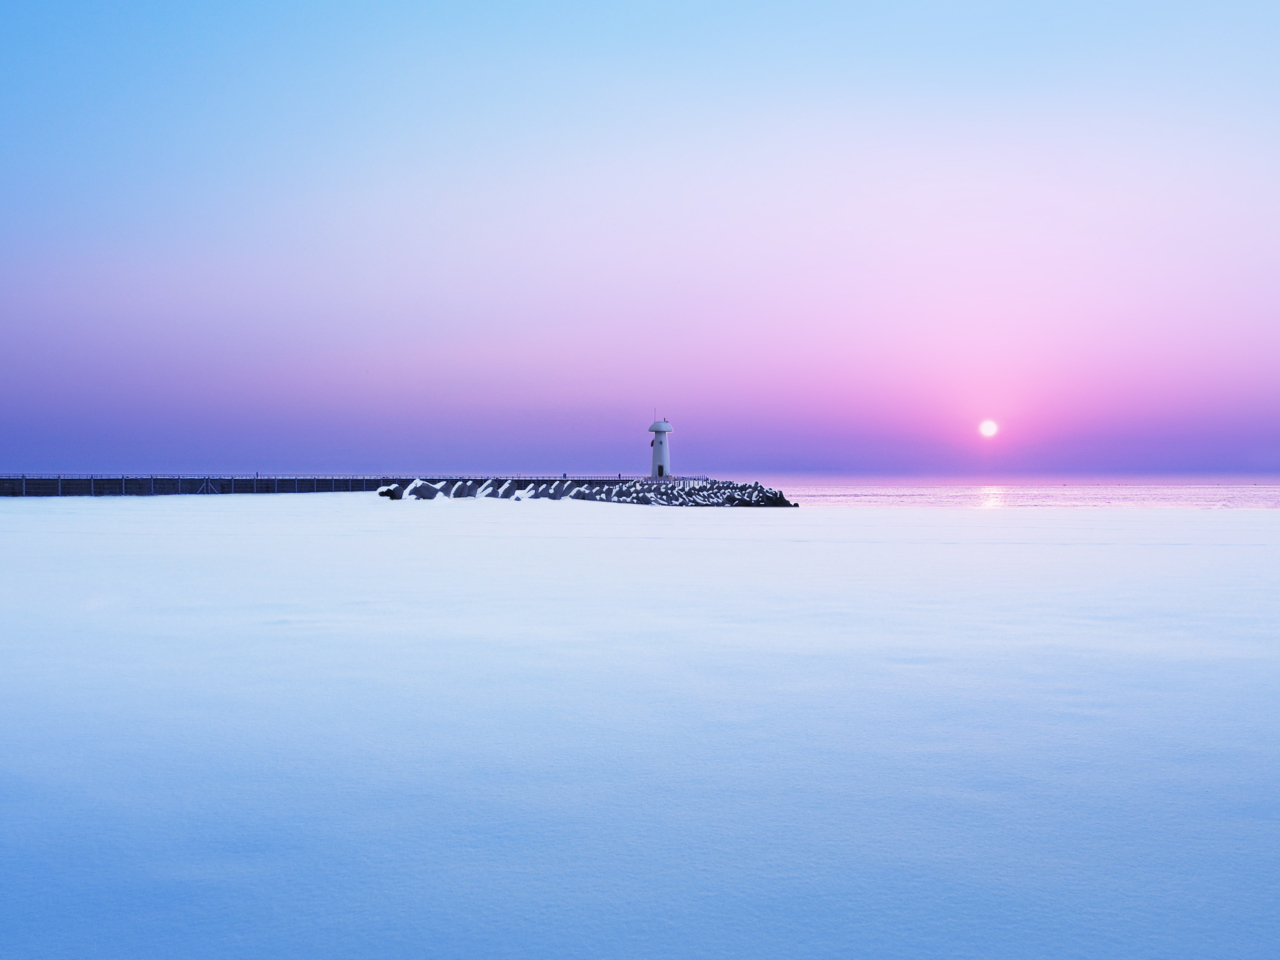 Обои Lighthouse On Sea Pier At Dawn 1280x960